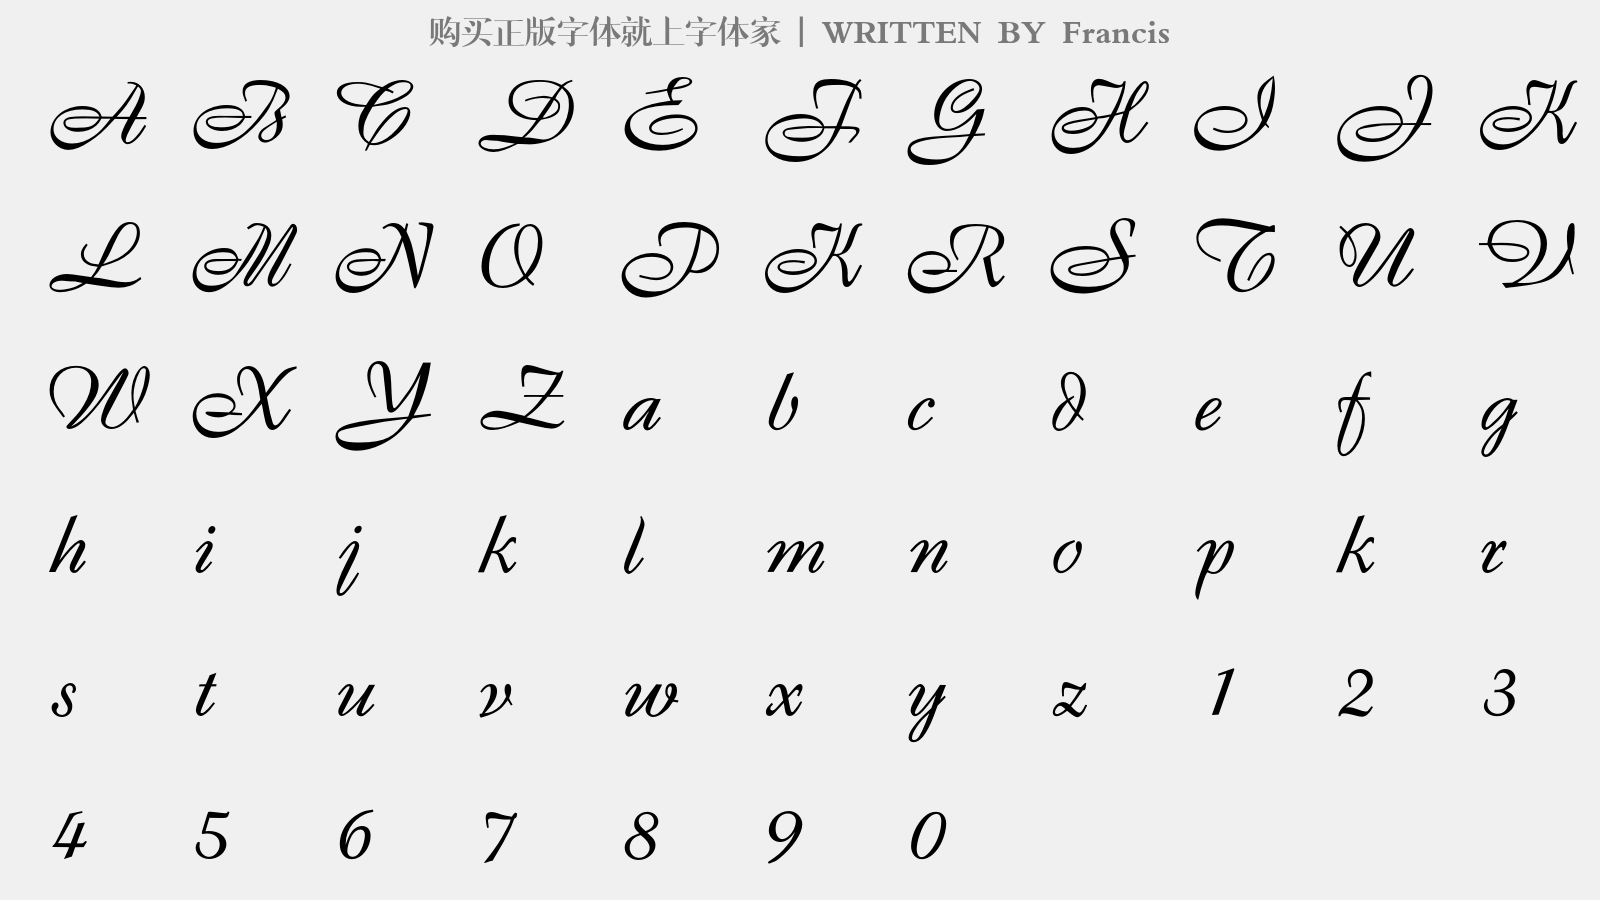 Francis - 大写字母/小写字母/数字